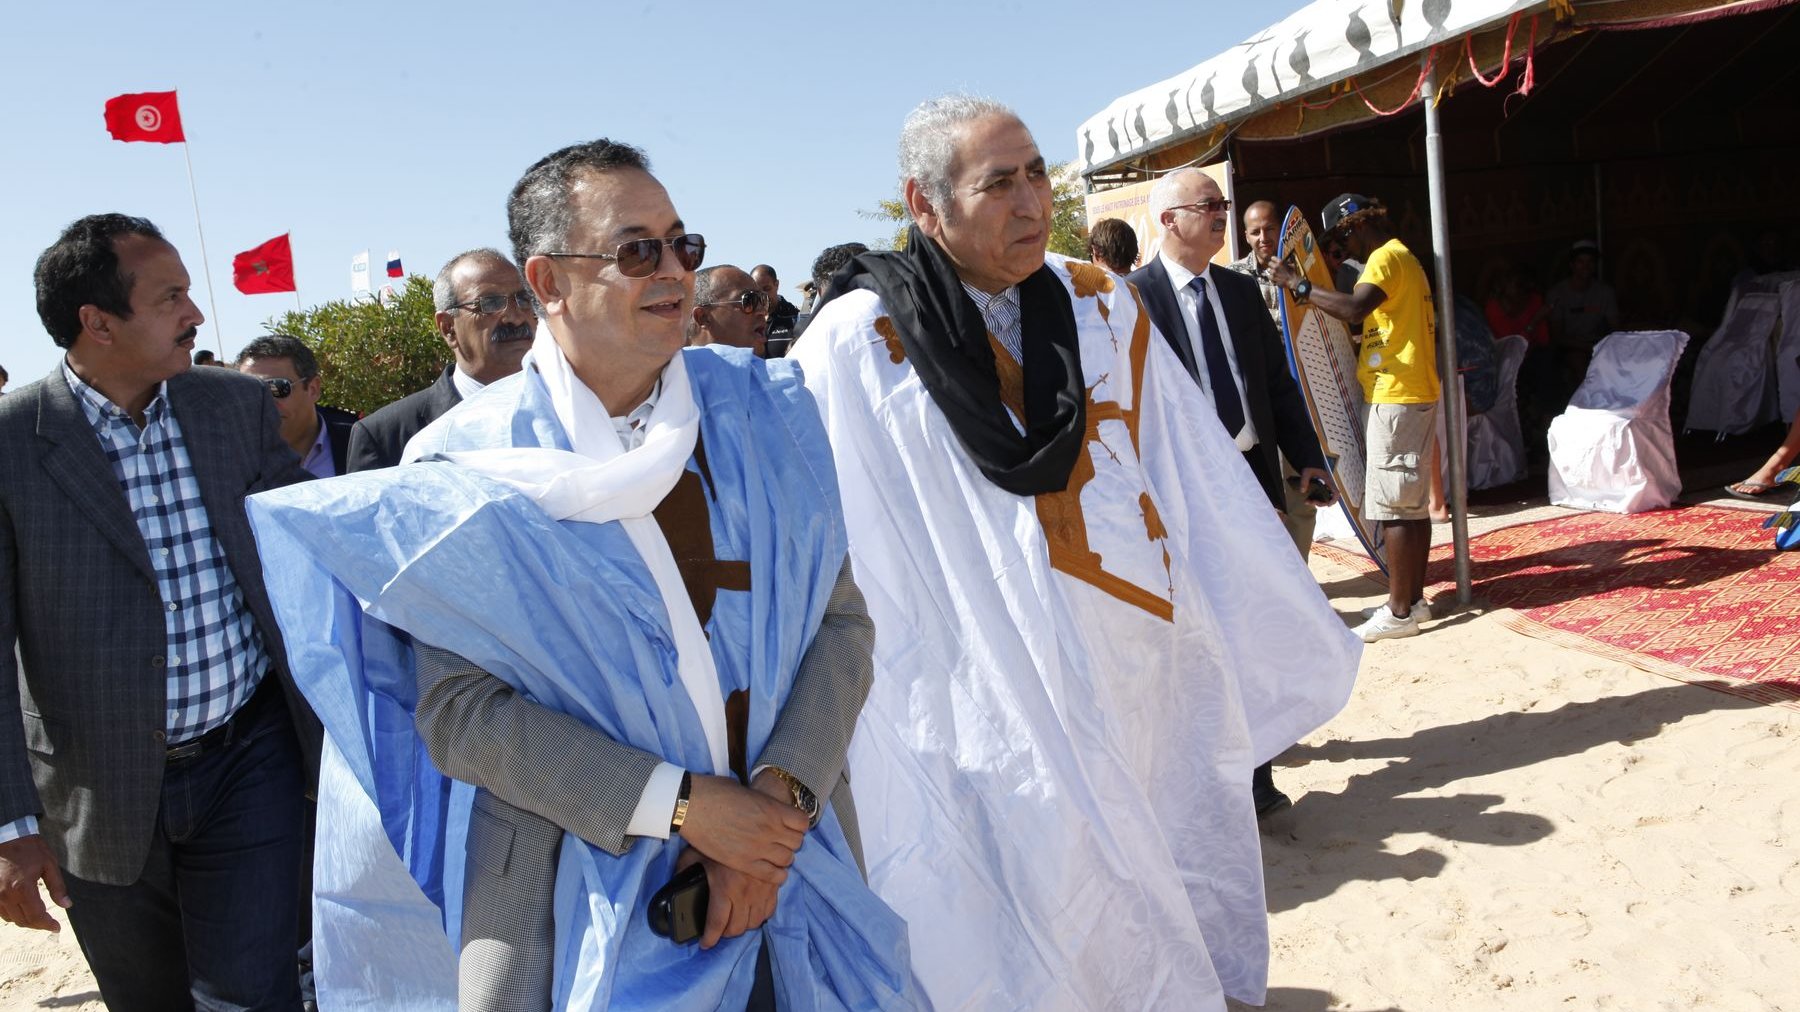 L'arrivée du ministre du Tourisme, Lahcen Haddad, en compagnie du wali de la région Oued Eddahab Lagouira, Lamine Benomar, avant les cérémonies de remise des prix.
